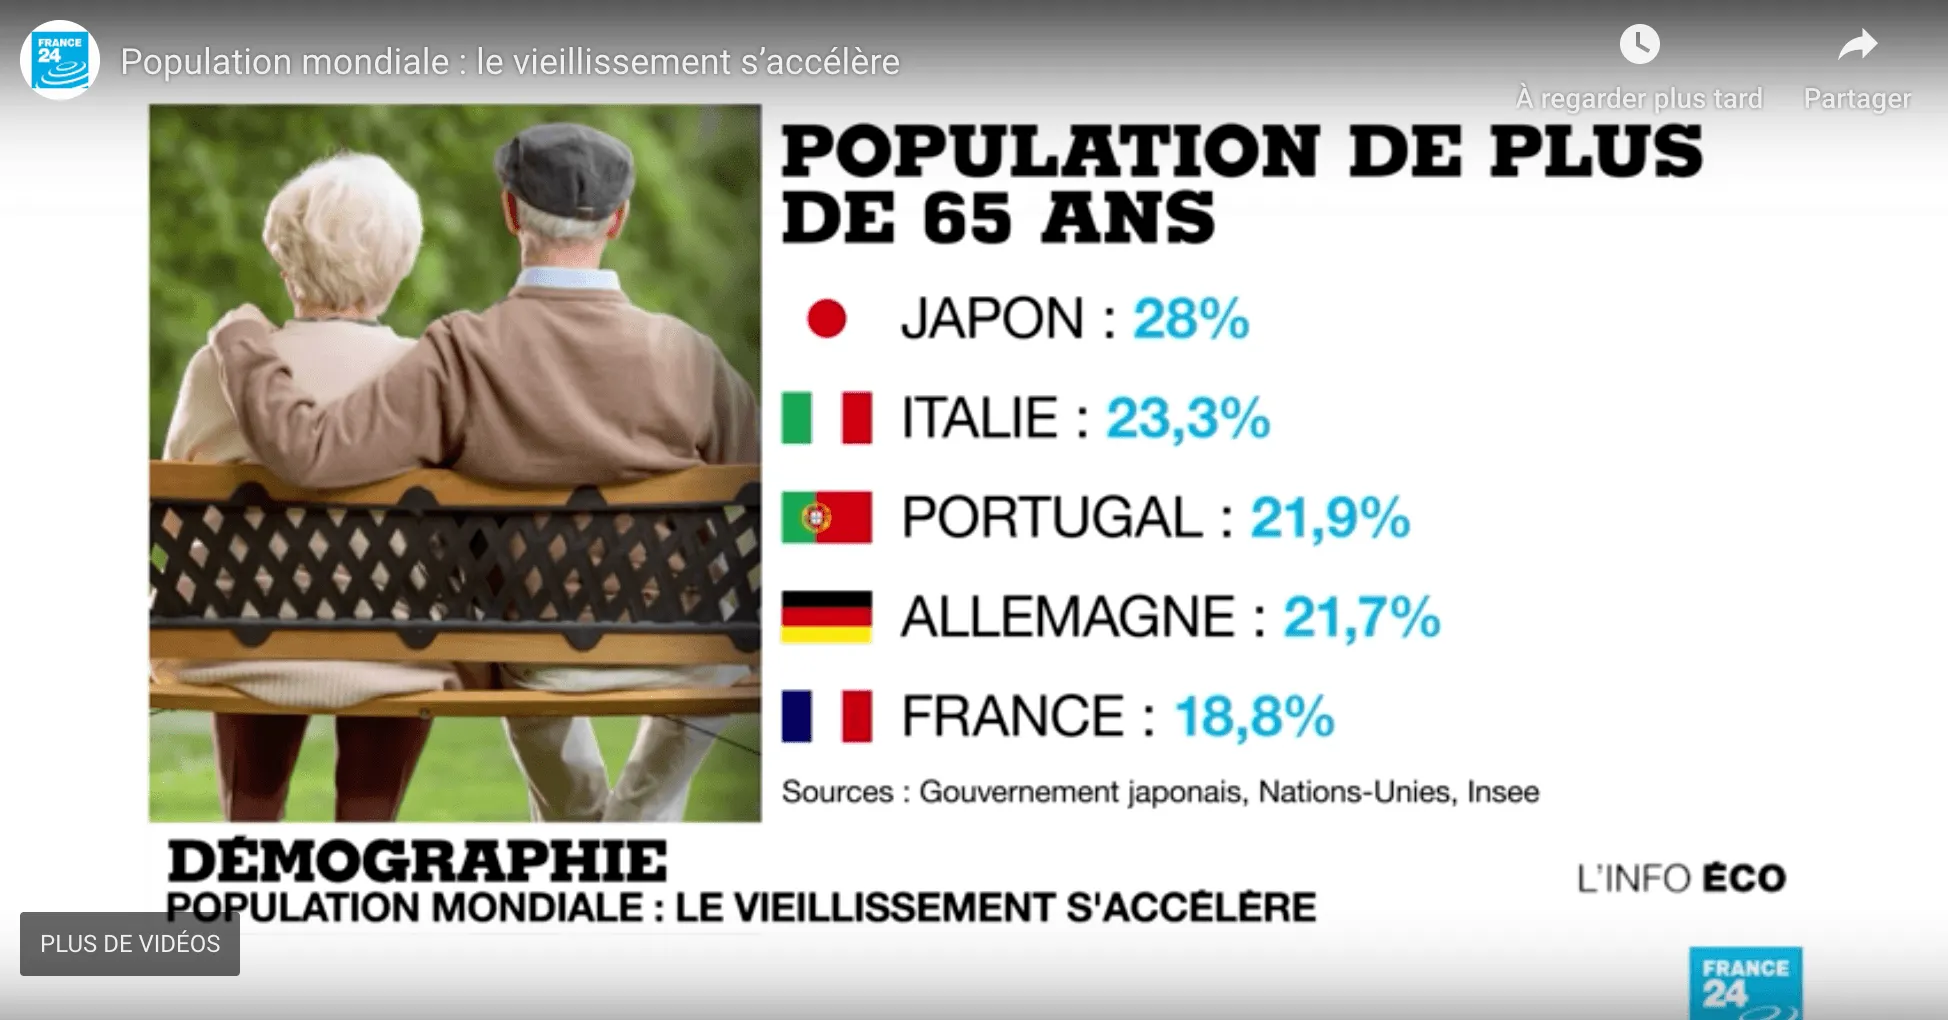 Capture d'écran d'un tableau présenté lors de l'émission - « Population mondiale : le vieillissement s'accélère », émission L'info éco sur France 24, présentée par Line Rifai, chroniqueuse économie, diffusée le 18 septembre 2018.